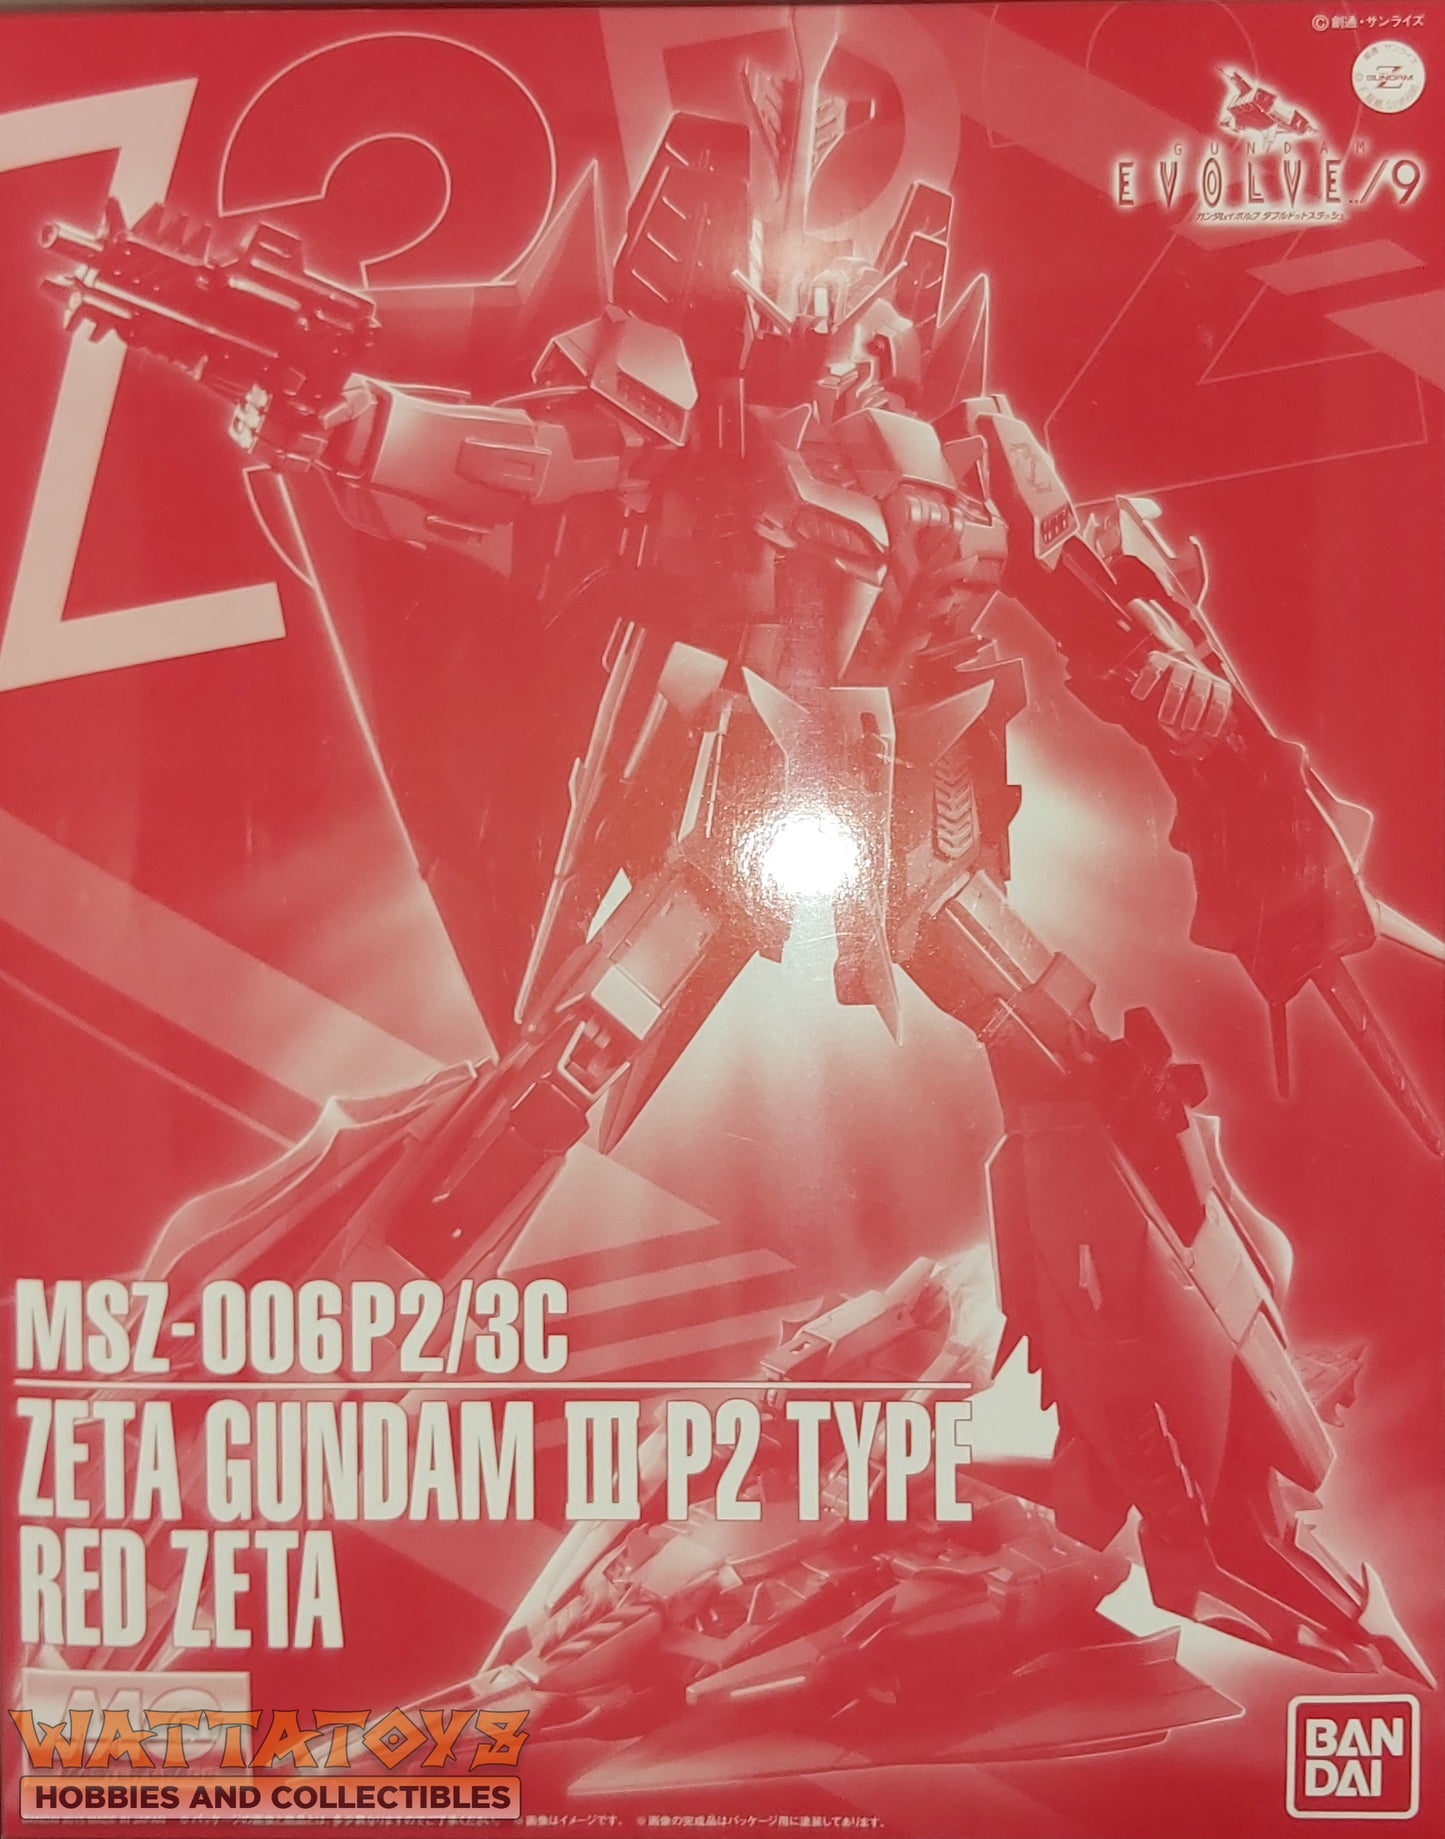 P-Bandai MG 1/100 MSZ-006P2/3C ZETA GUNDAM III P2 TYPE RED ZETA